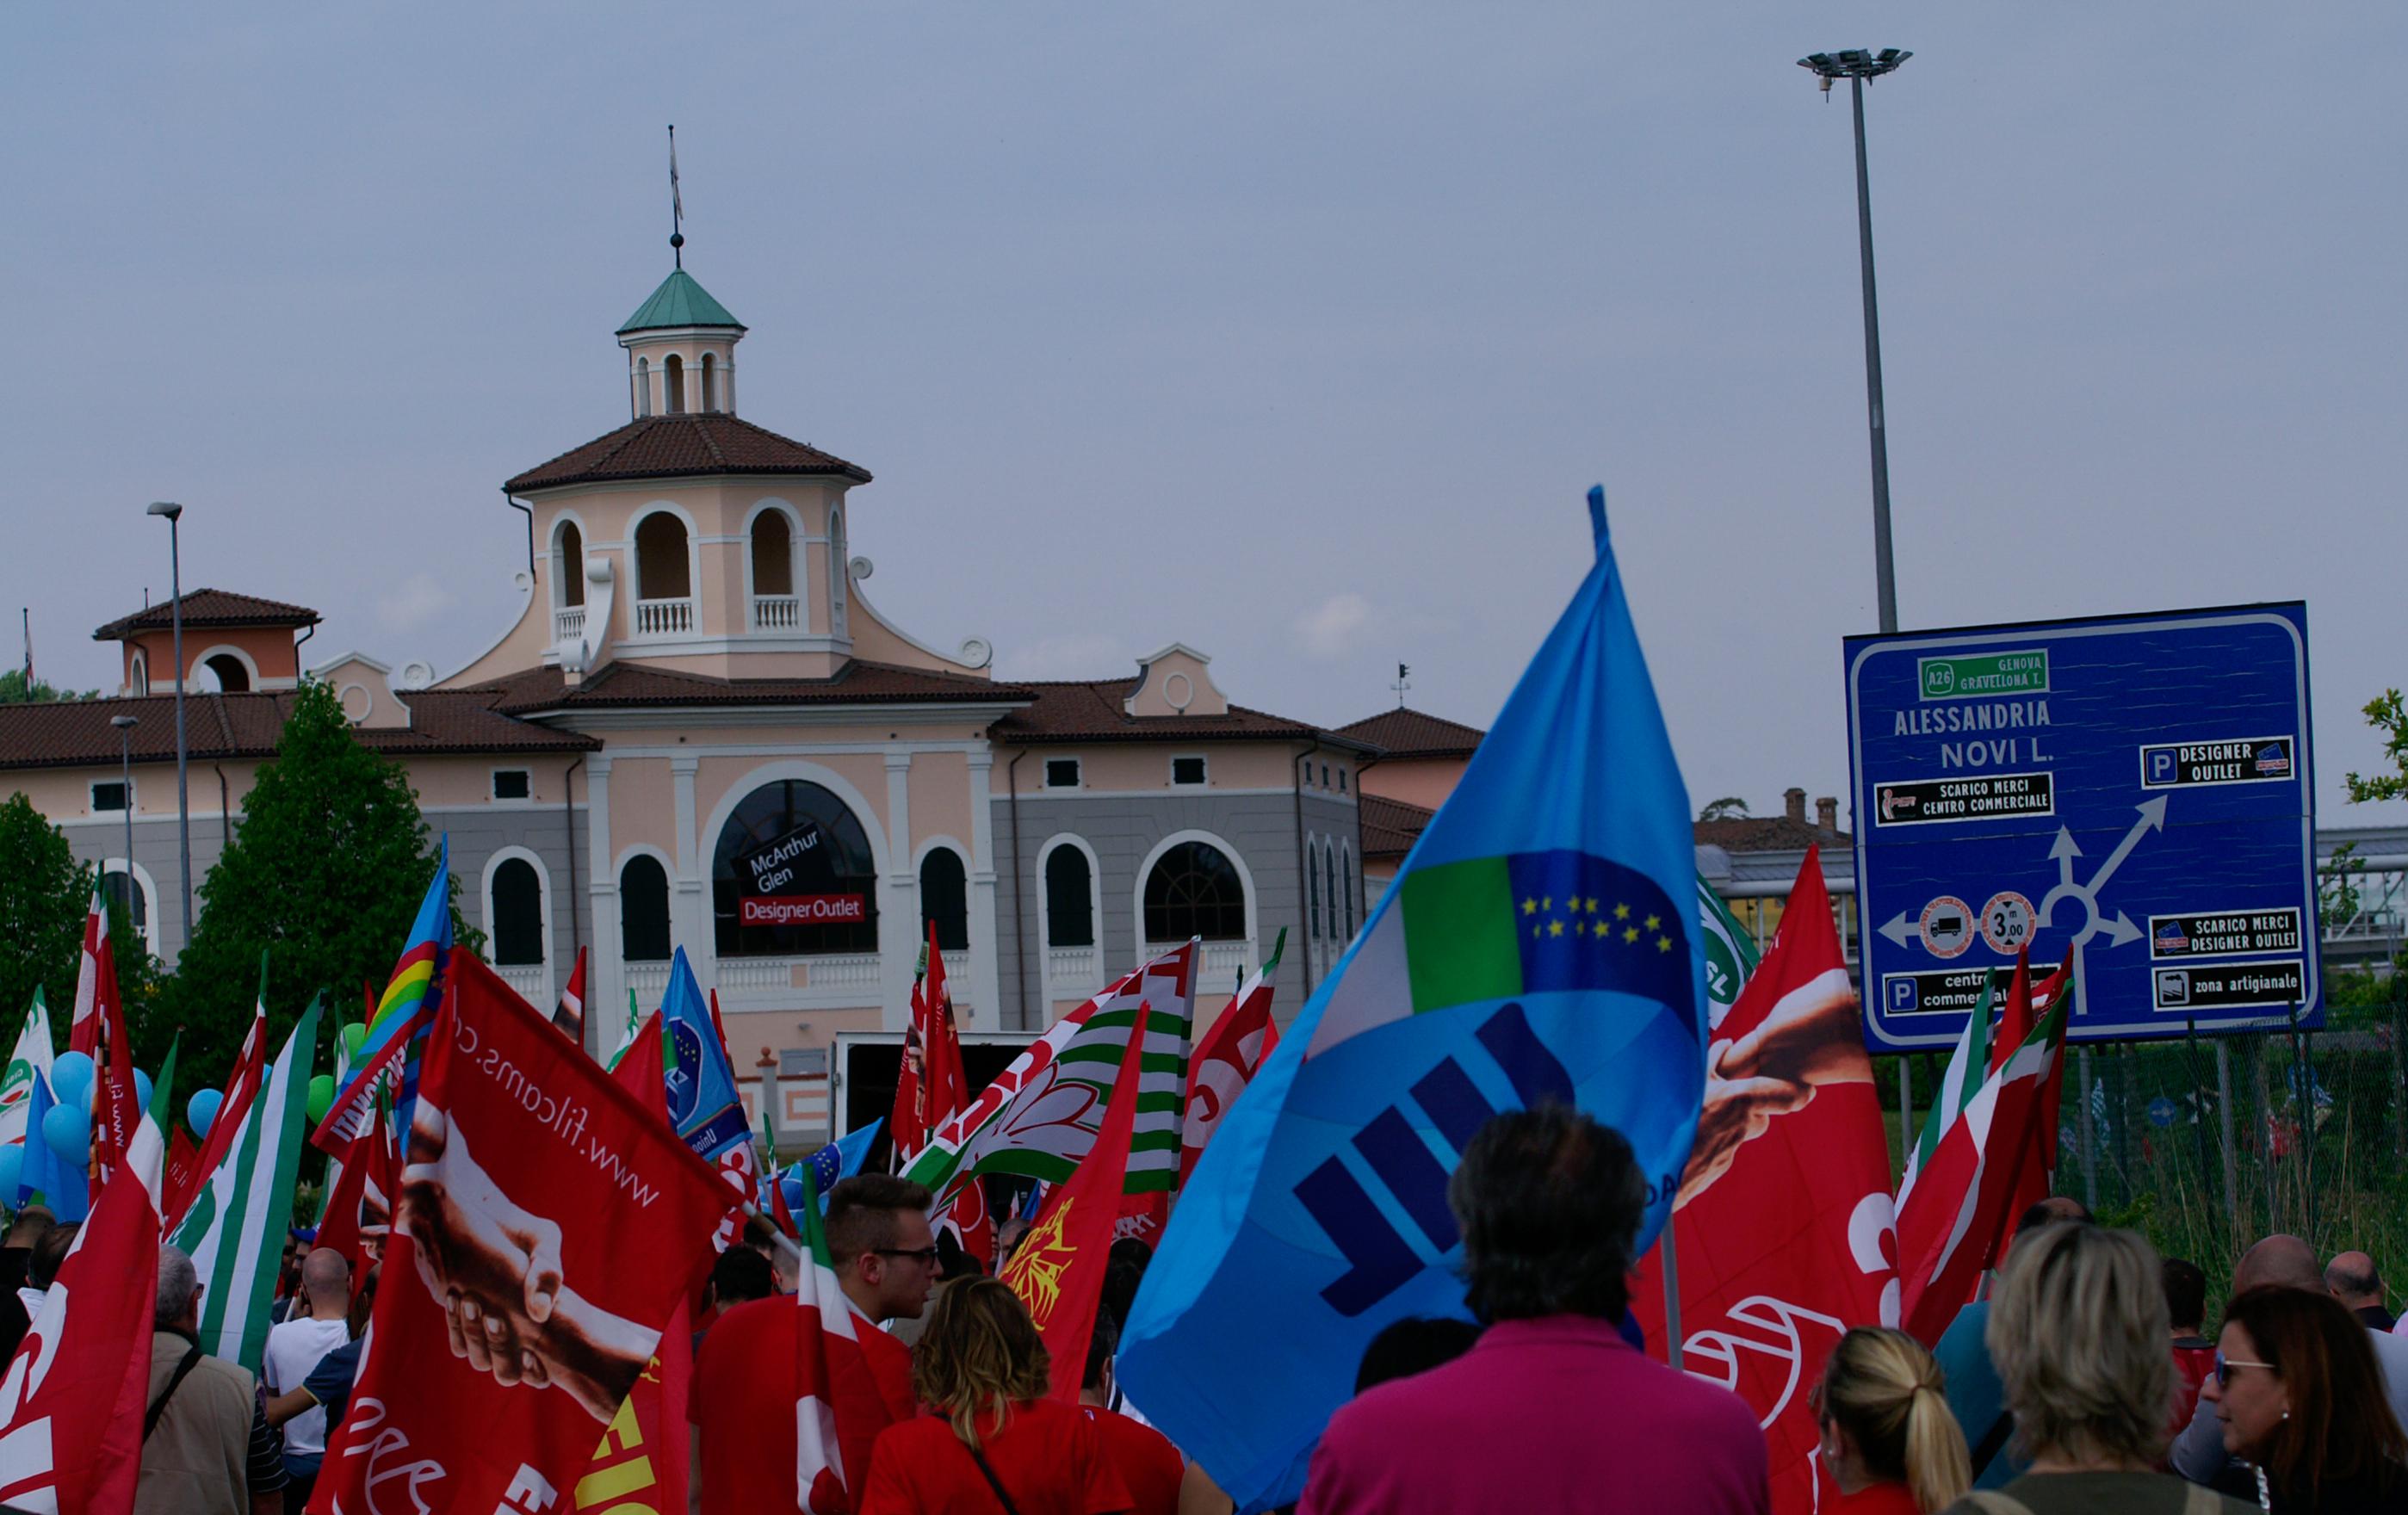 La protesta a Serravalle